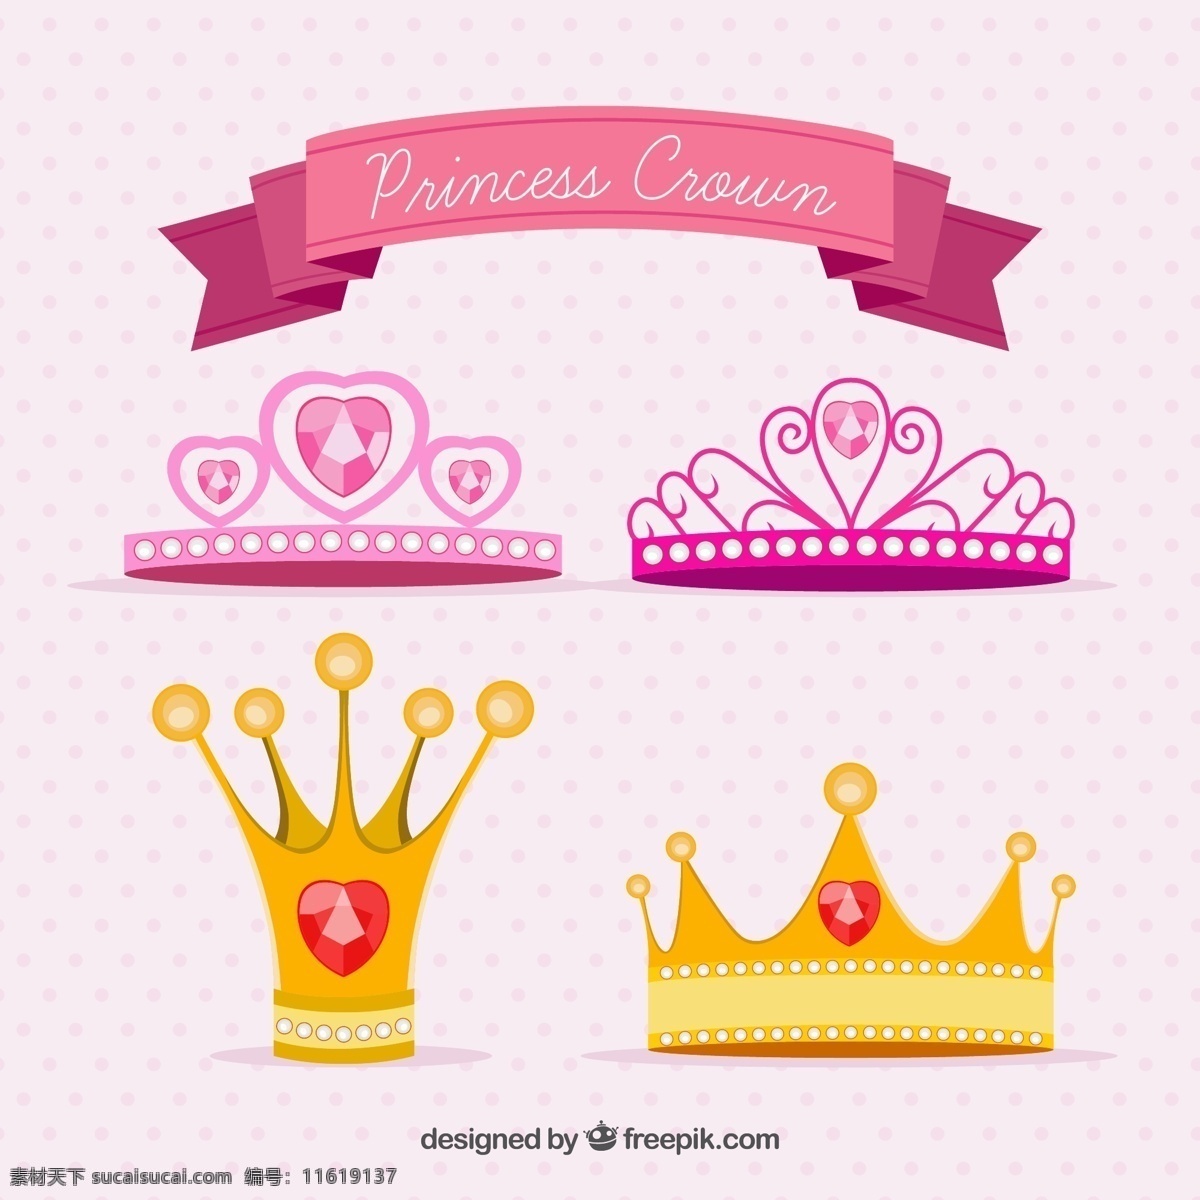 款 卡通 公主 王冠 矢量 4款 矢量素材 高贵 漂亮 白色